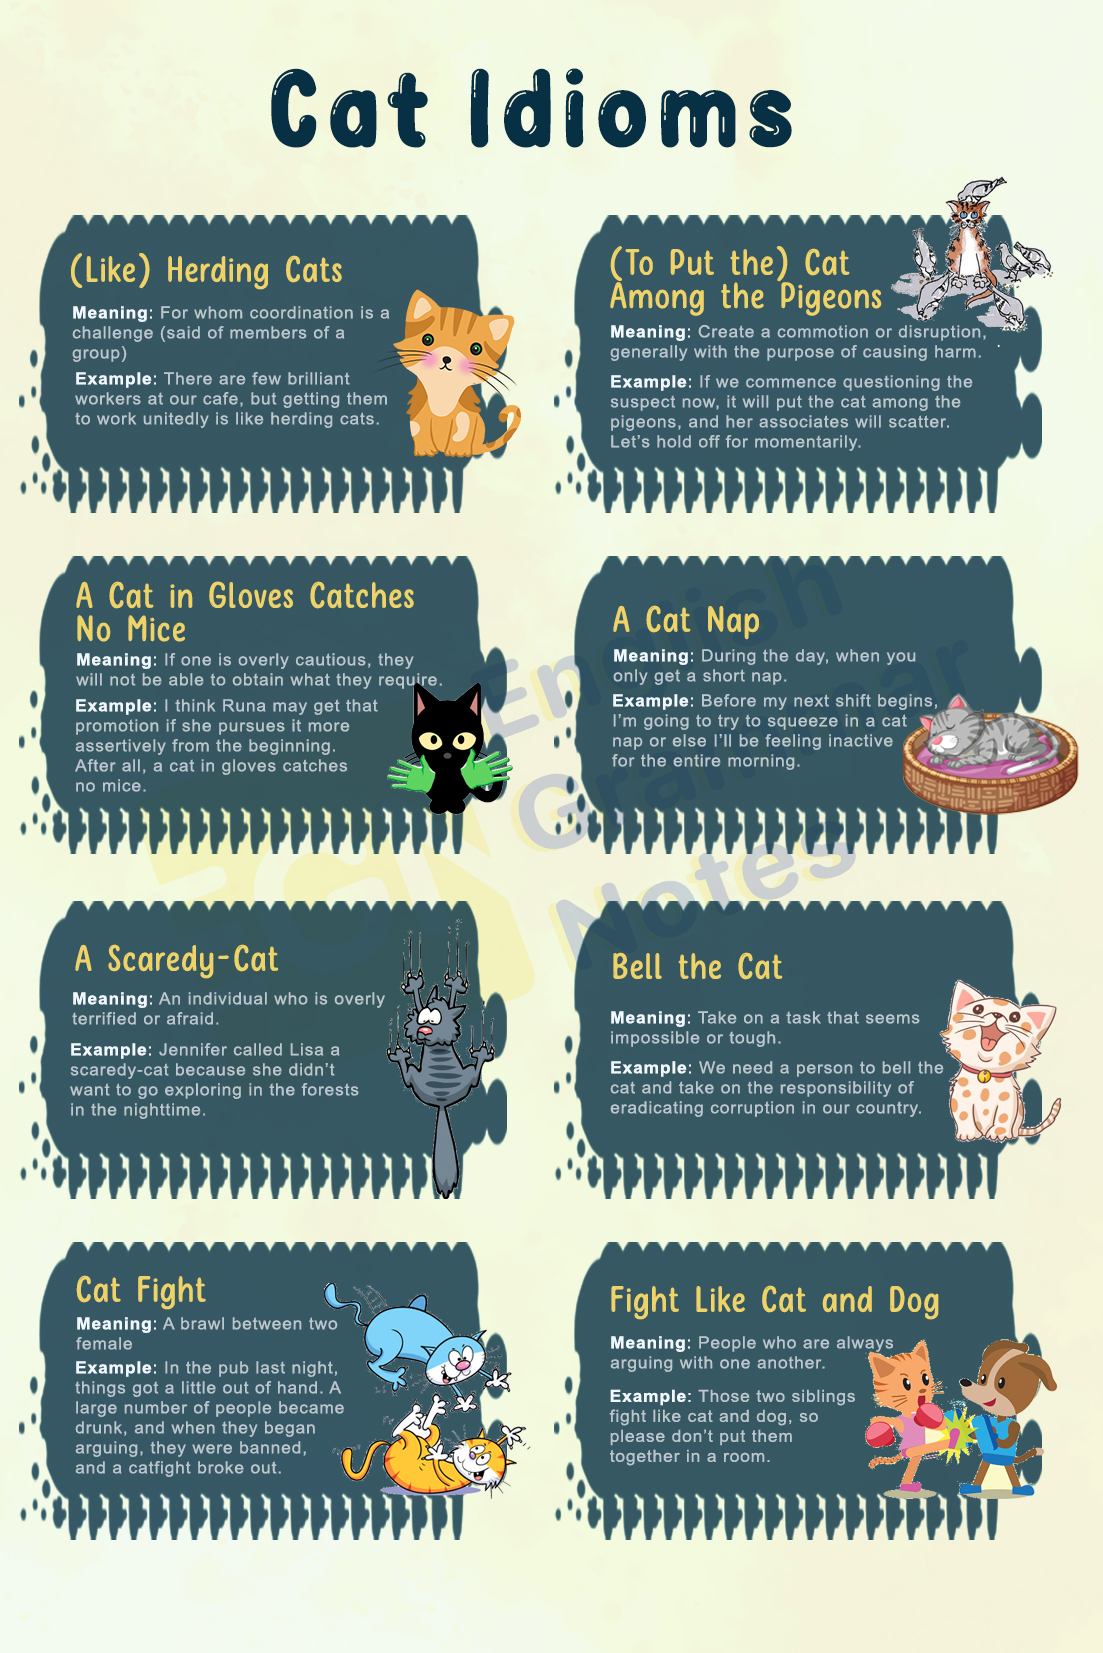 List of Cat Idioms